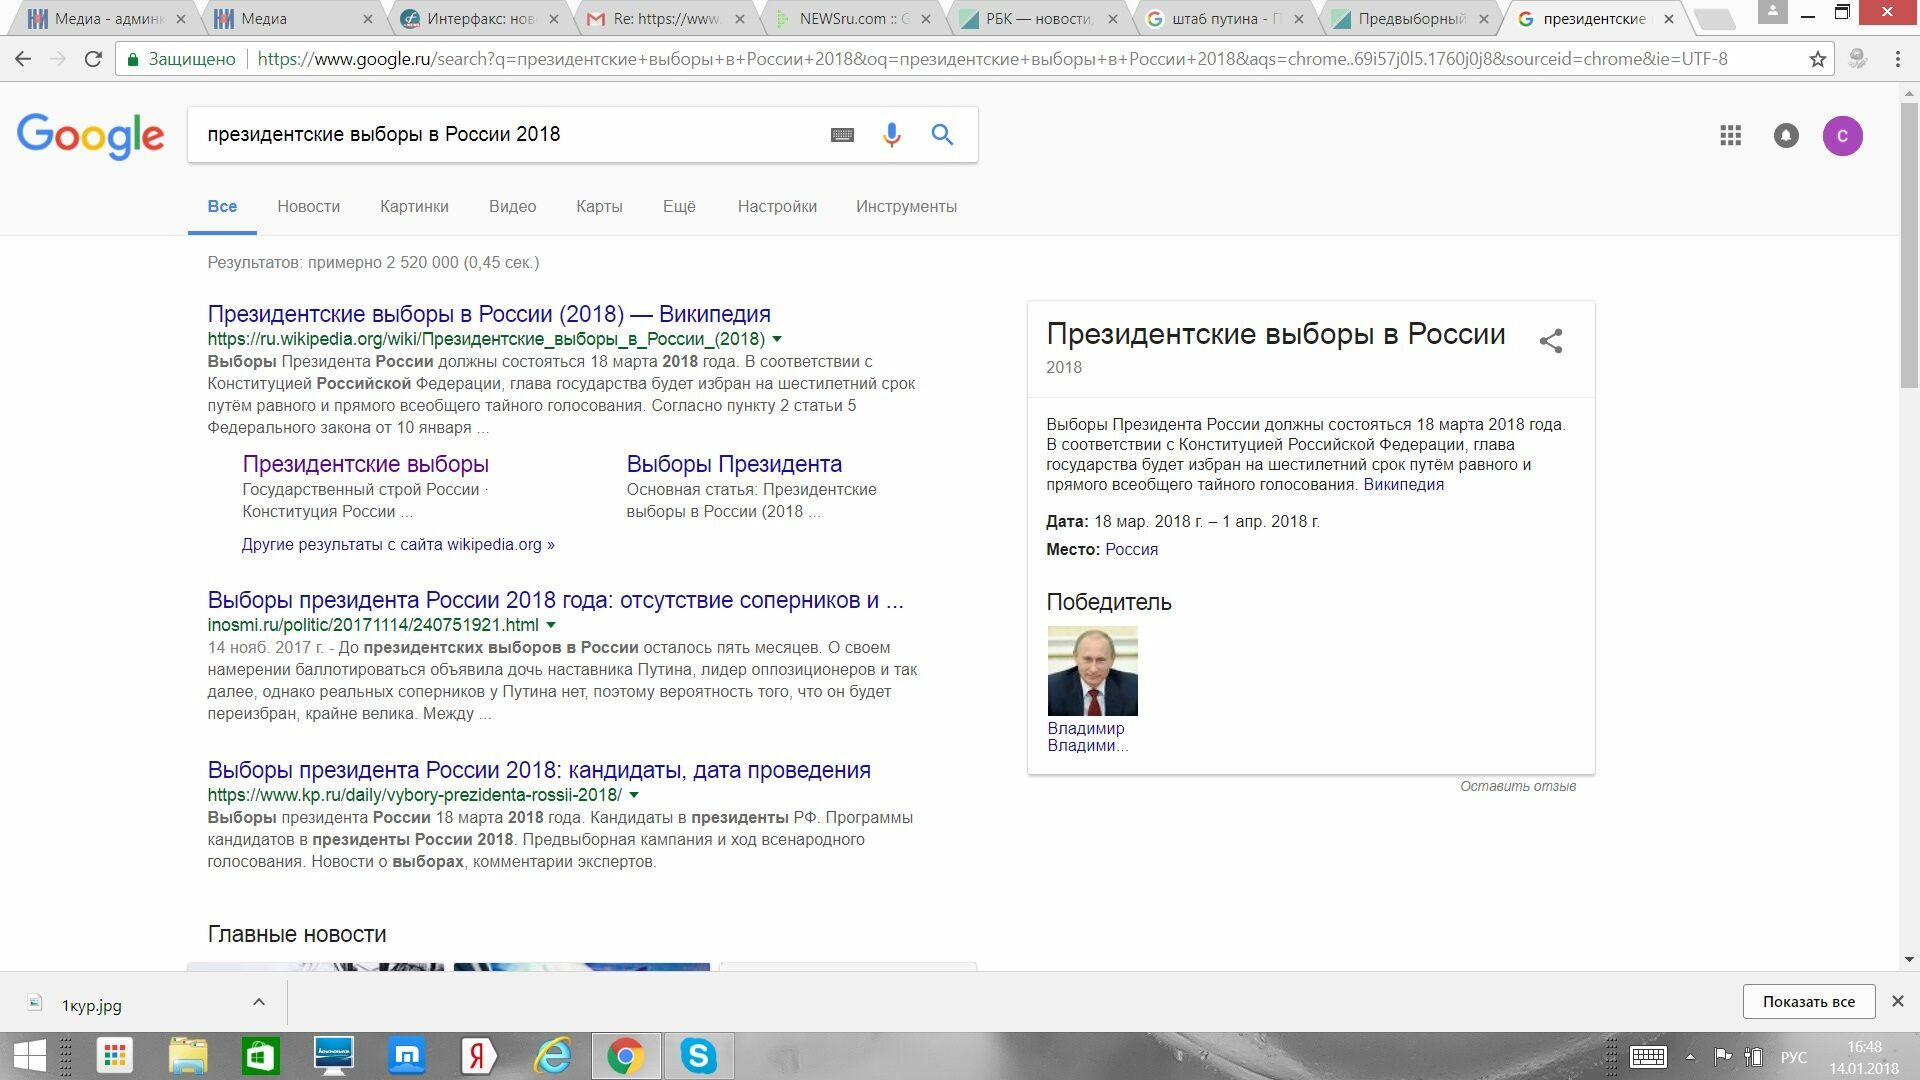 Google определился с победителем выборов президента России